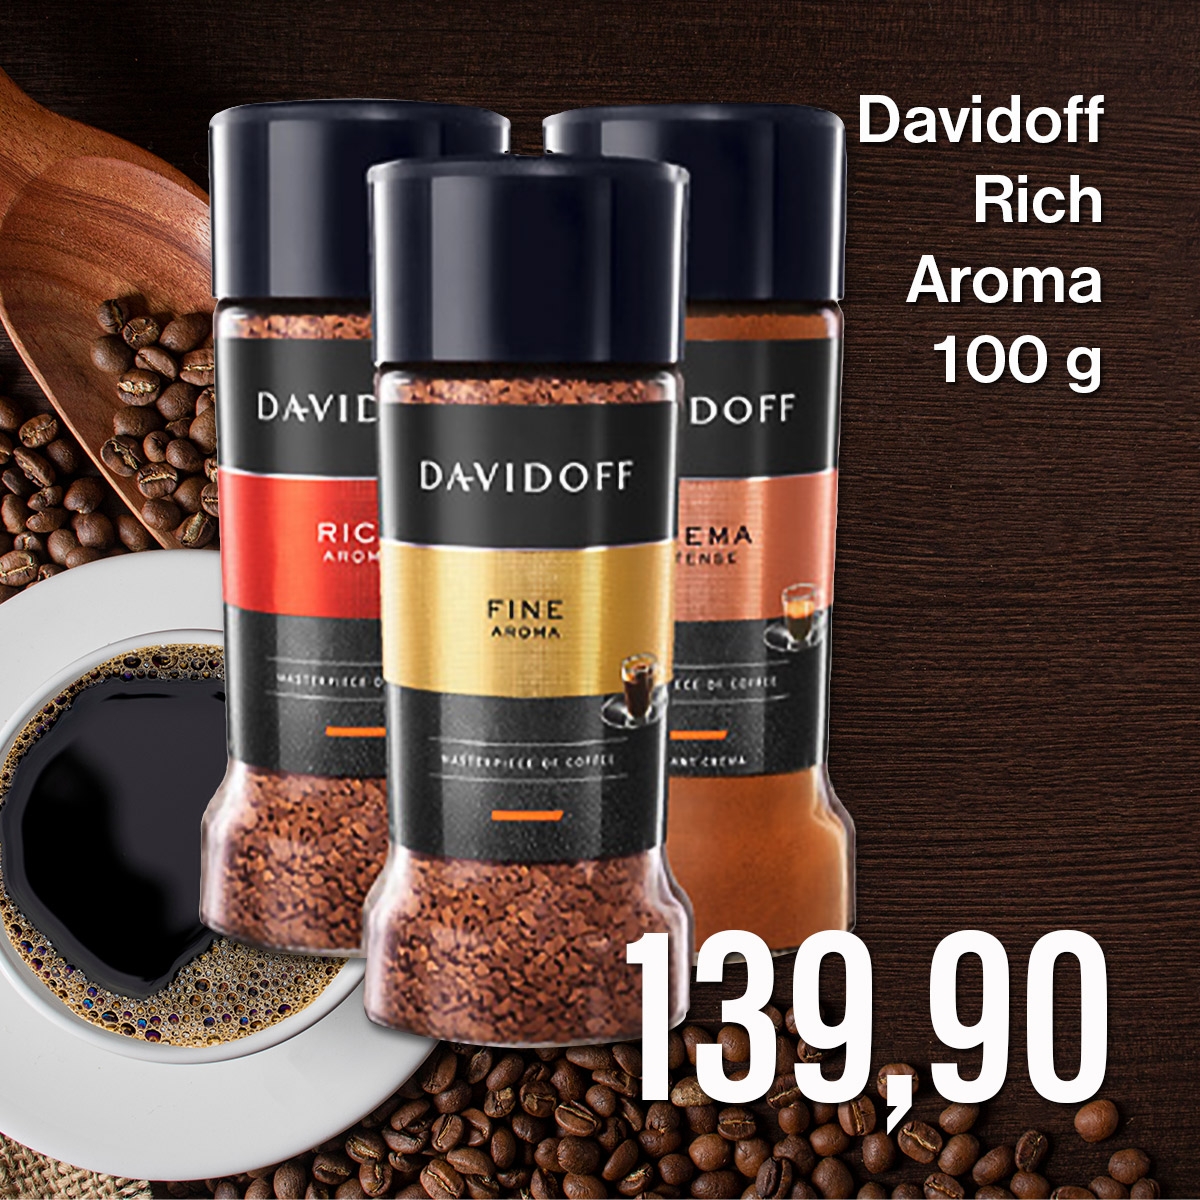 Davidoff Rich Aroma 100 g